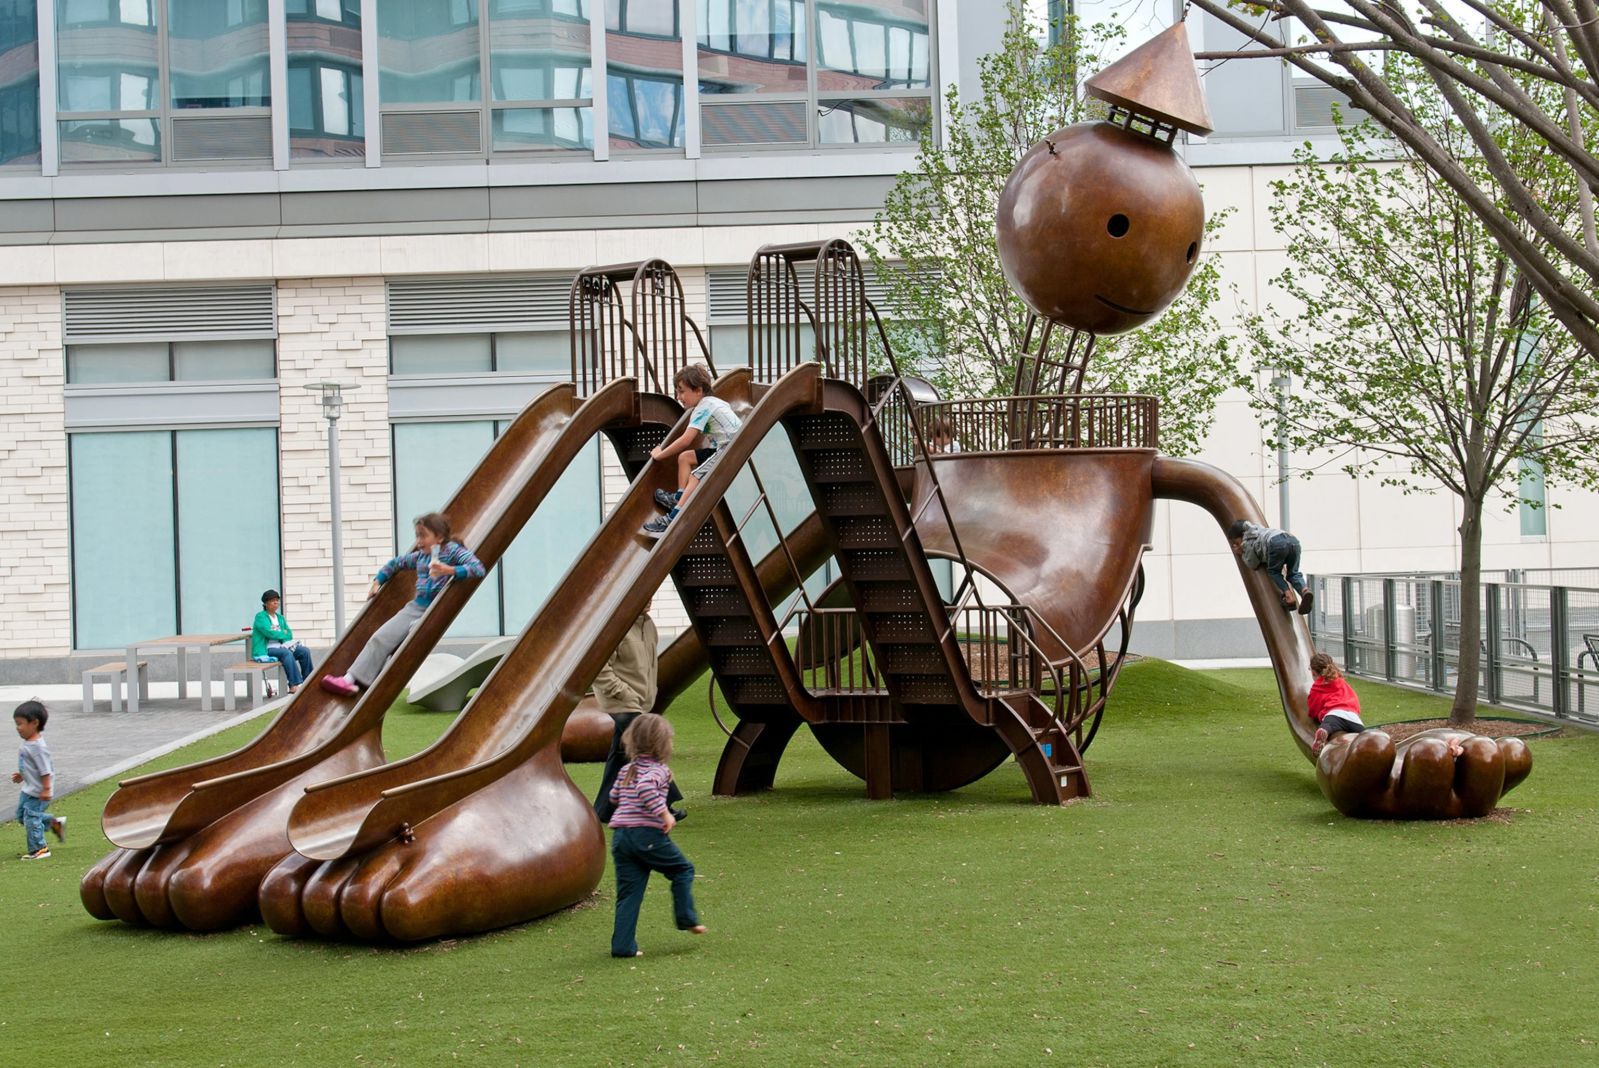 Playground, New York, ABD